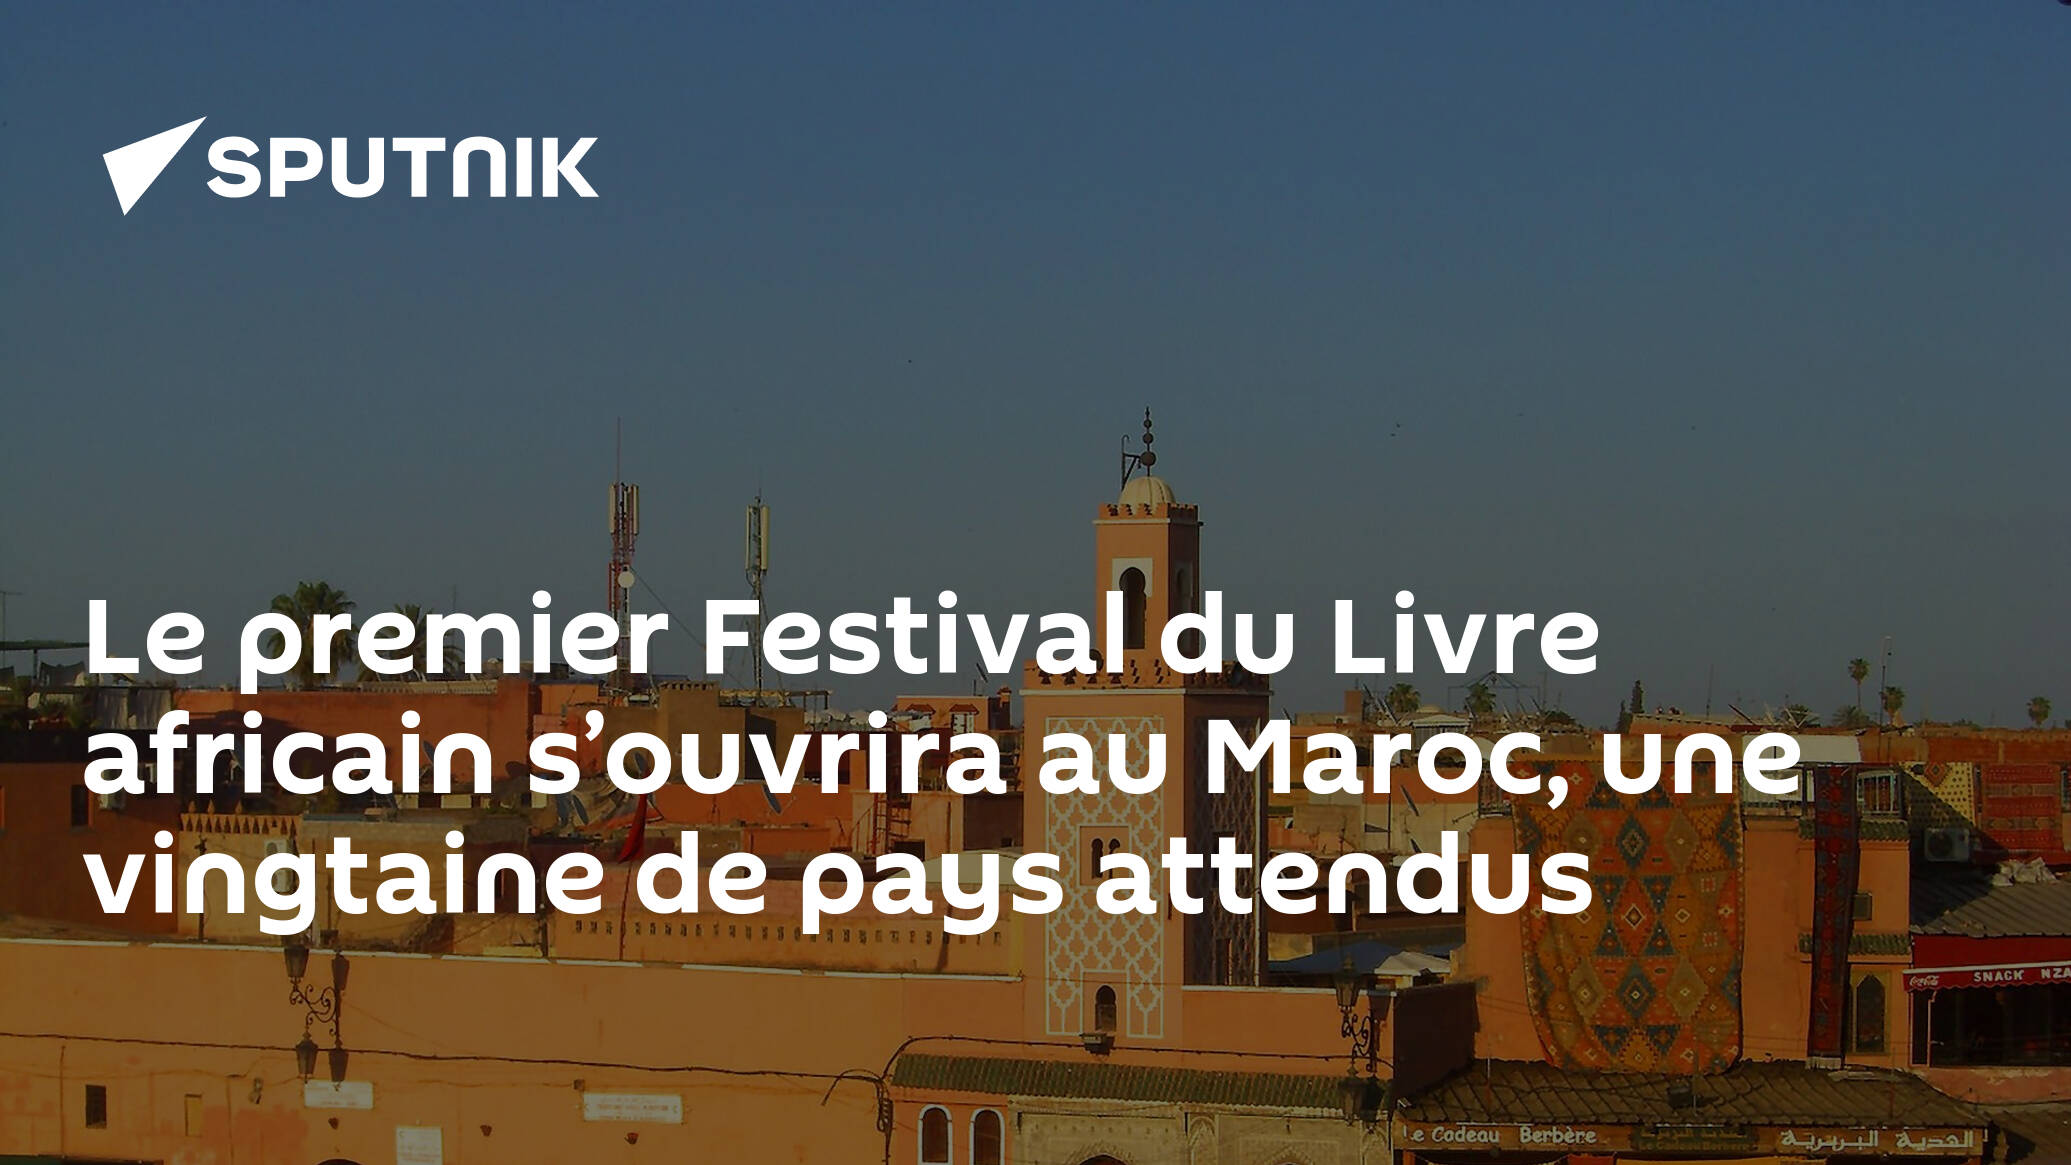 Le premier Festival du Livre africain s’ouvrira au Maroc, une vingtaine